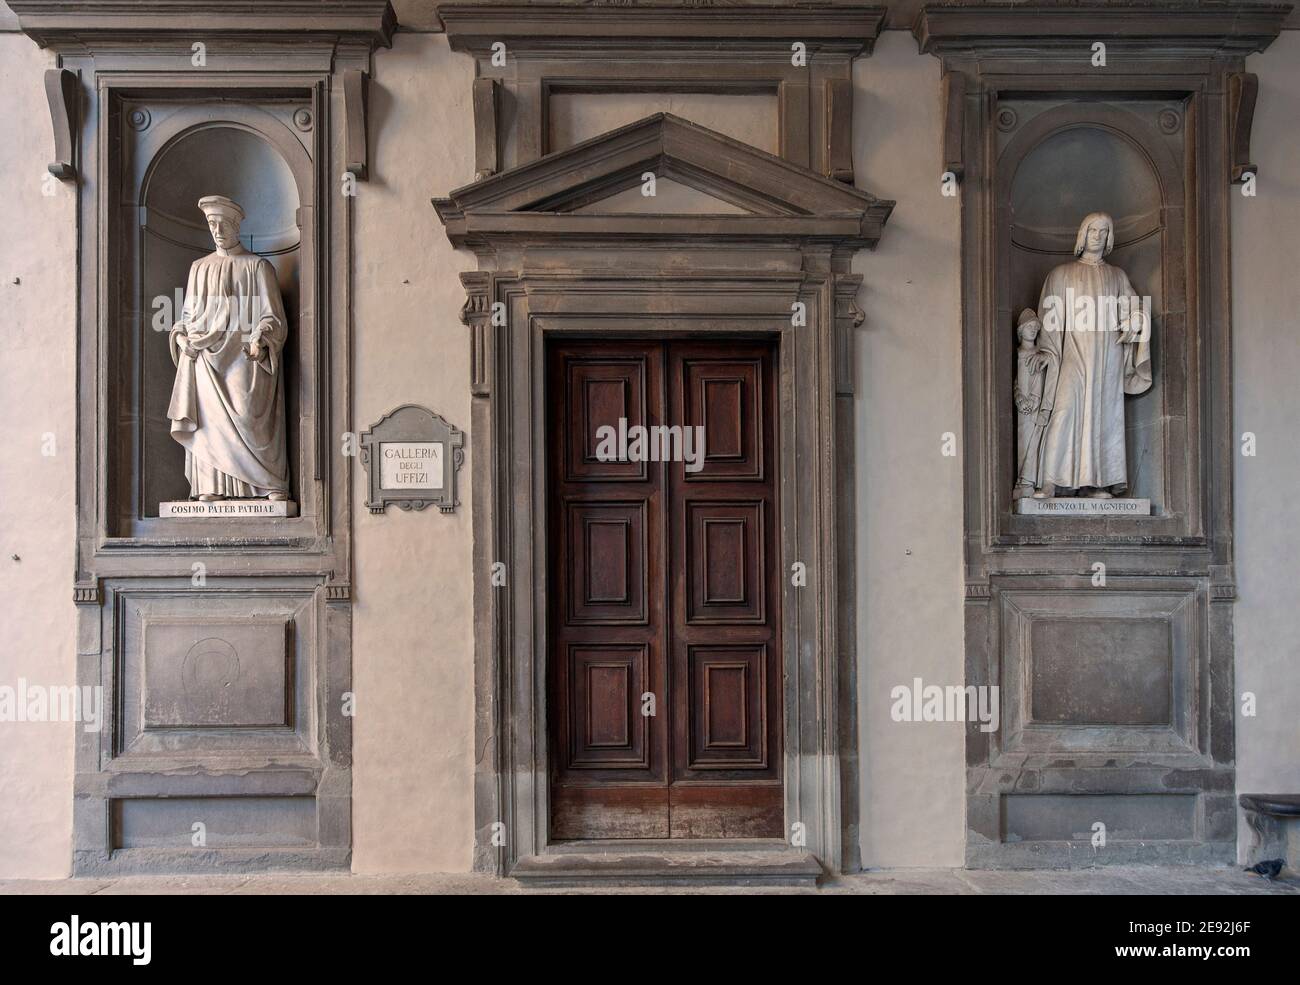 Firenze, Italia - 2020 gennaio 18: Antica porta d'ingresso in legno al Museo della Galleria degli Uffizi. Statue di marmo di Cosimo e Lorenzo Medici su entrambi i lati. Foto Stock